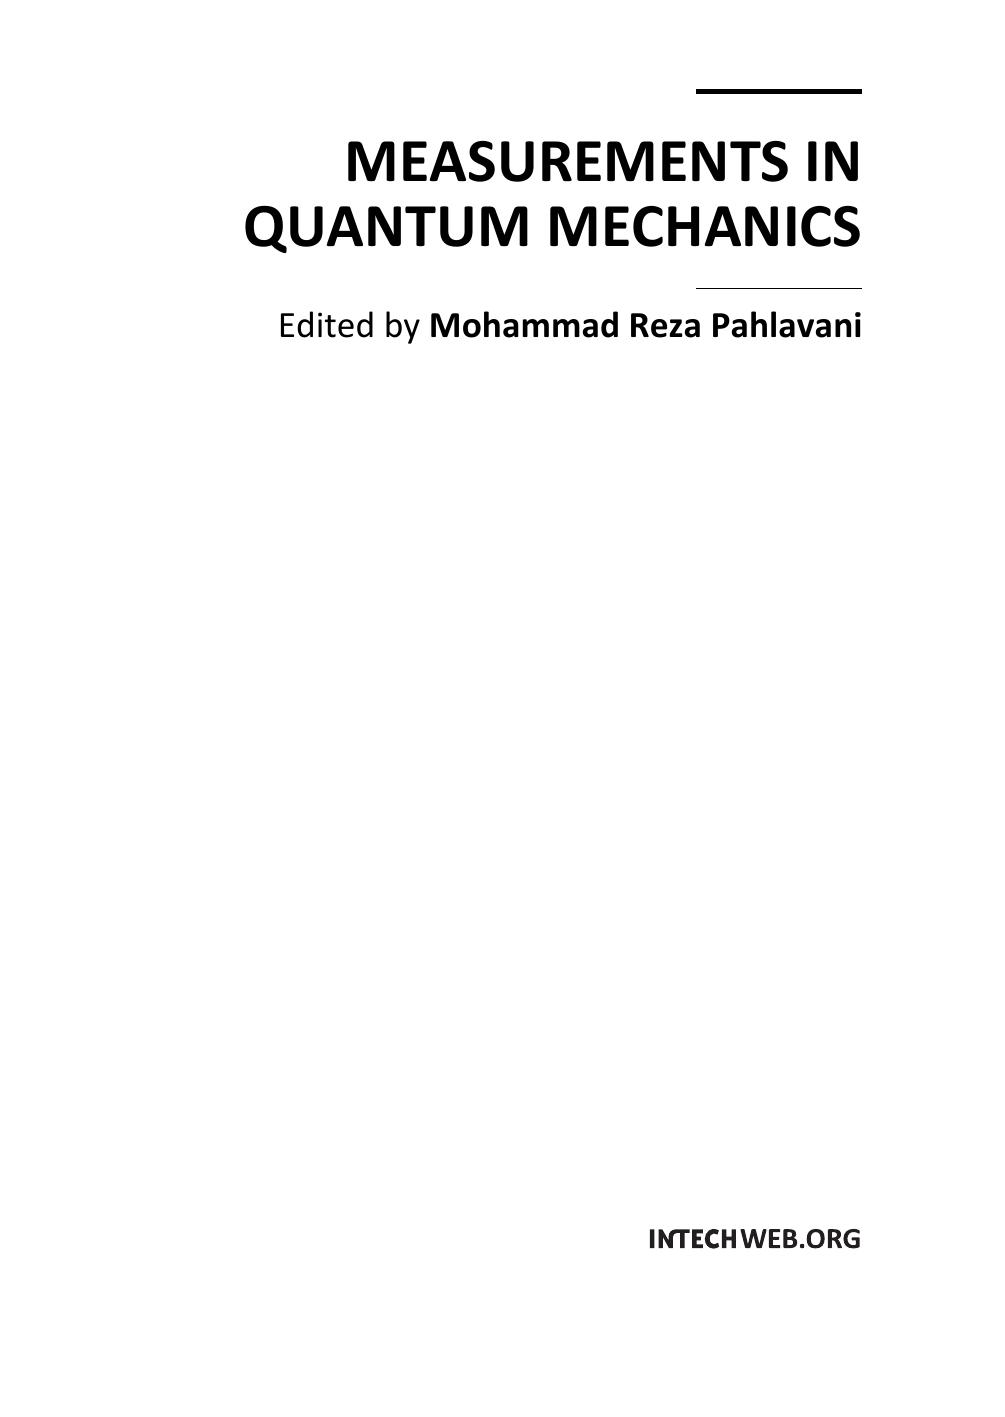 Measurements in Quantum Mechanics 2011.pdf